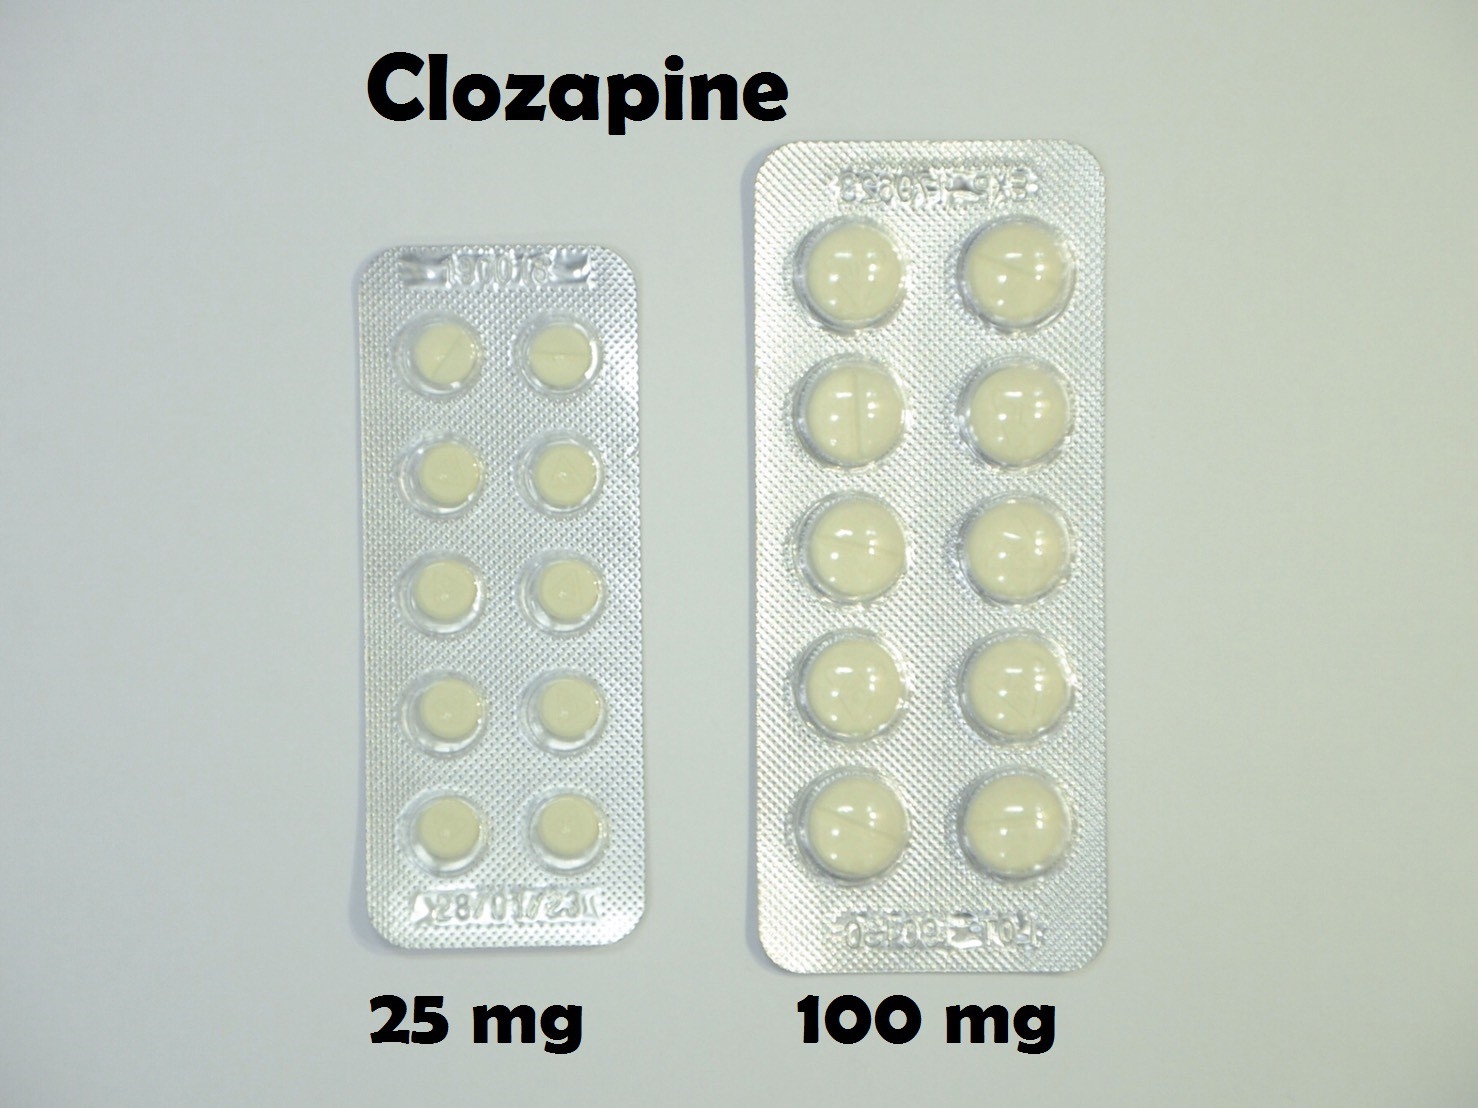 ยาที่มีหลายความแรง : Clozapine 25 mg และ 100 mg